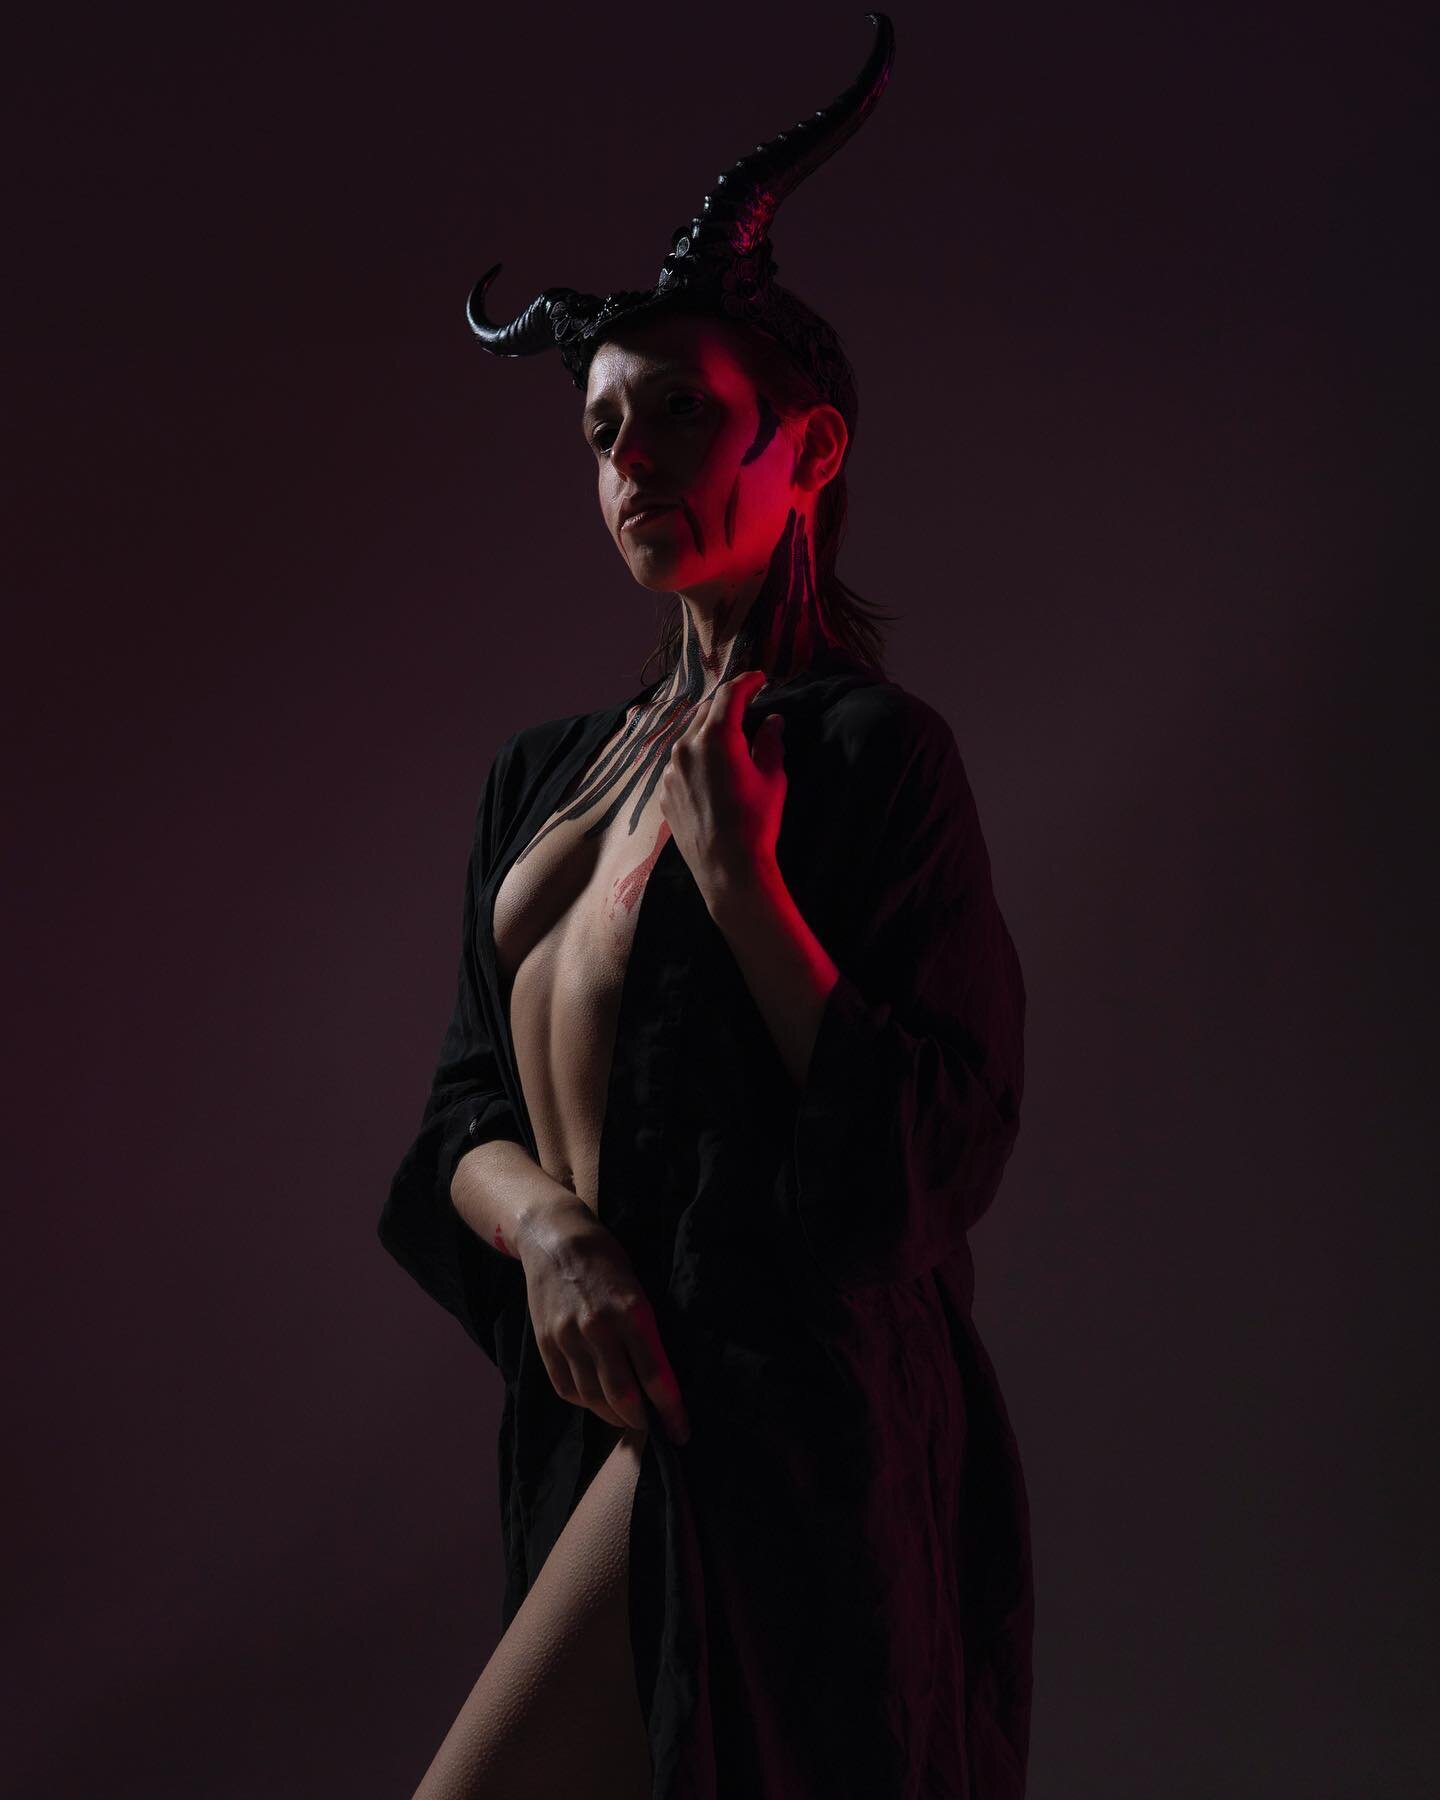 Diabla (pt. 1)
@melancholic_model 

#cosplay #demon #devil #horns #beauty #drape #bodypaint #scleralenses